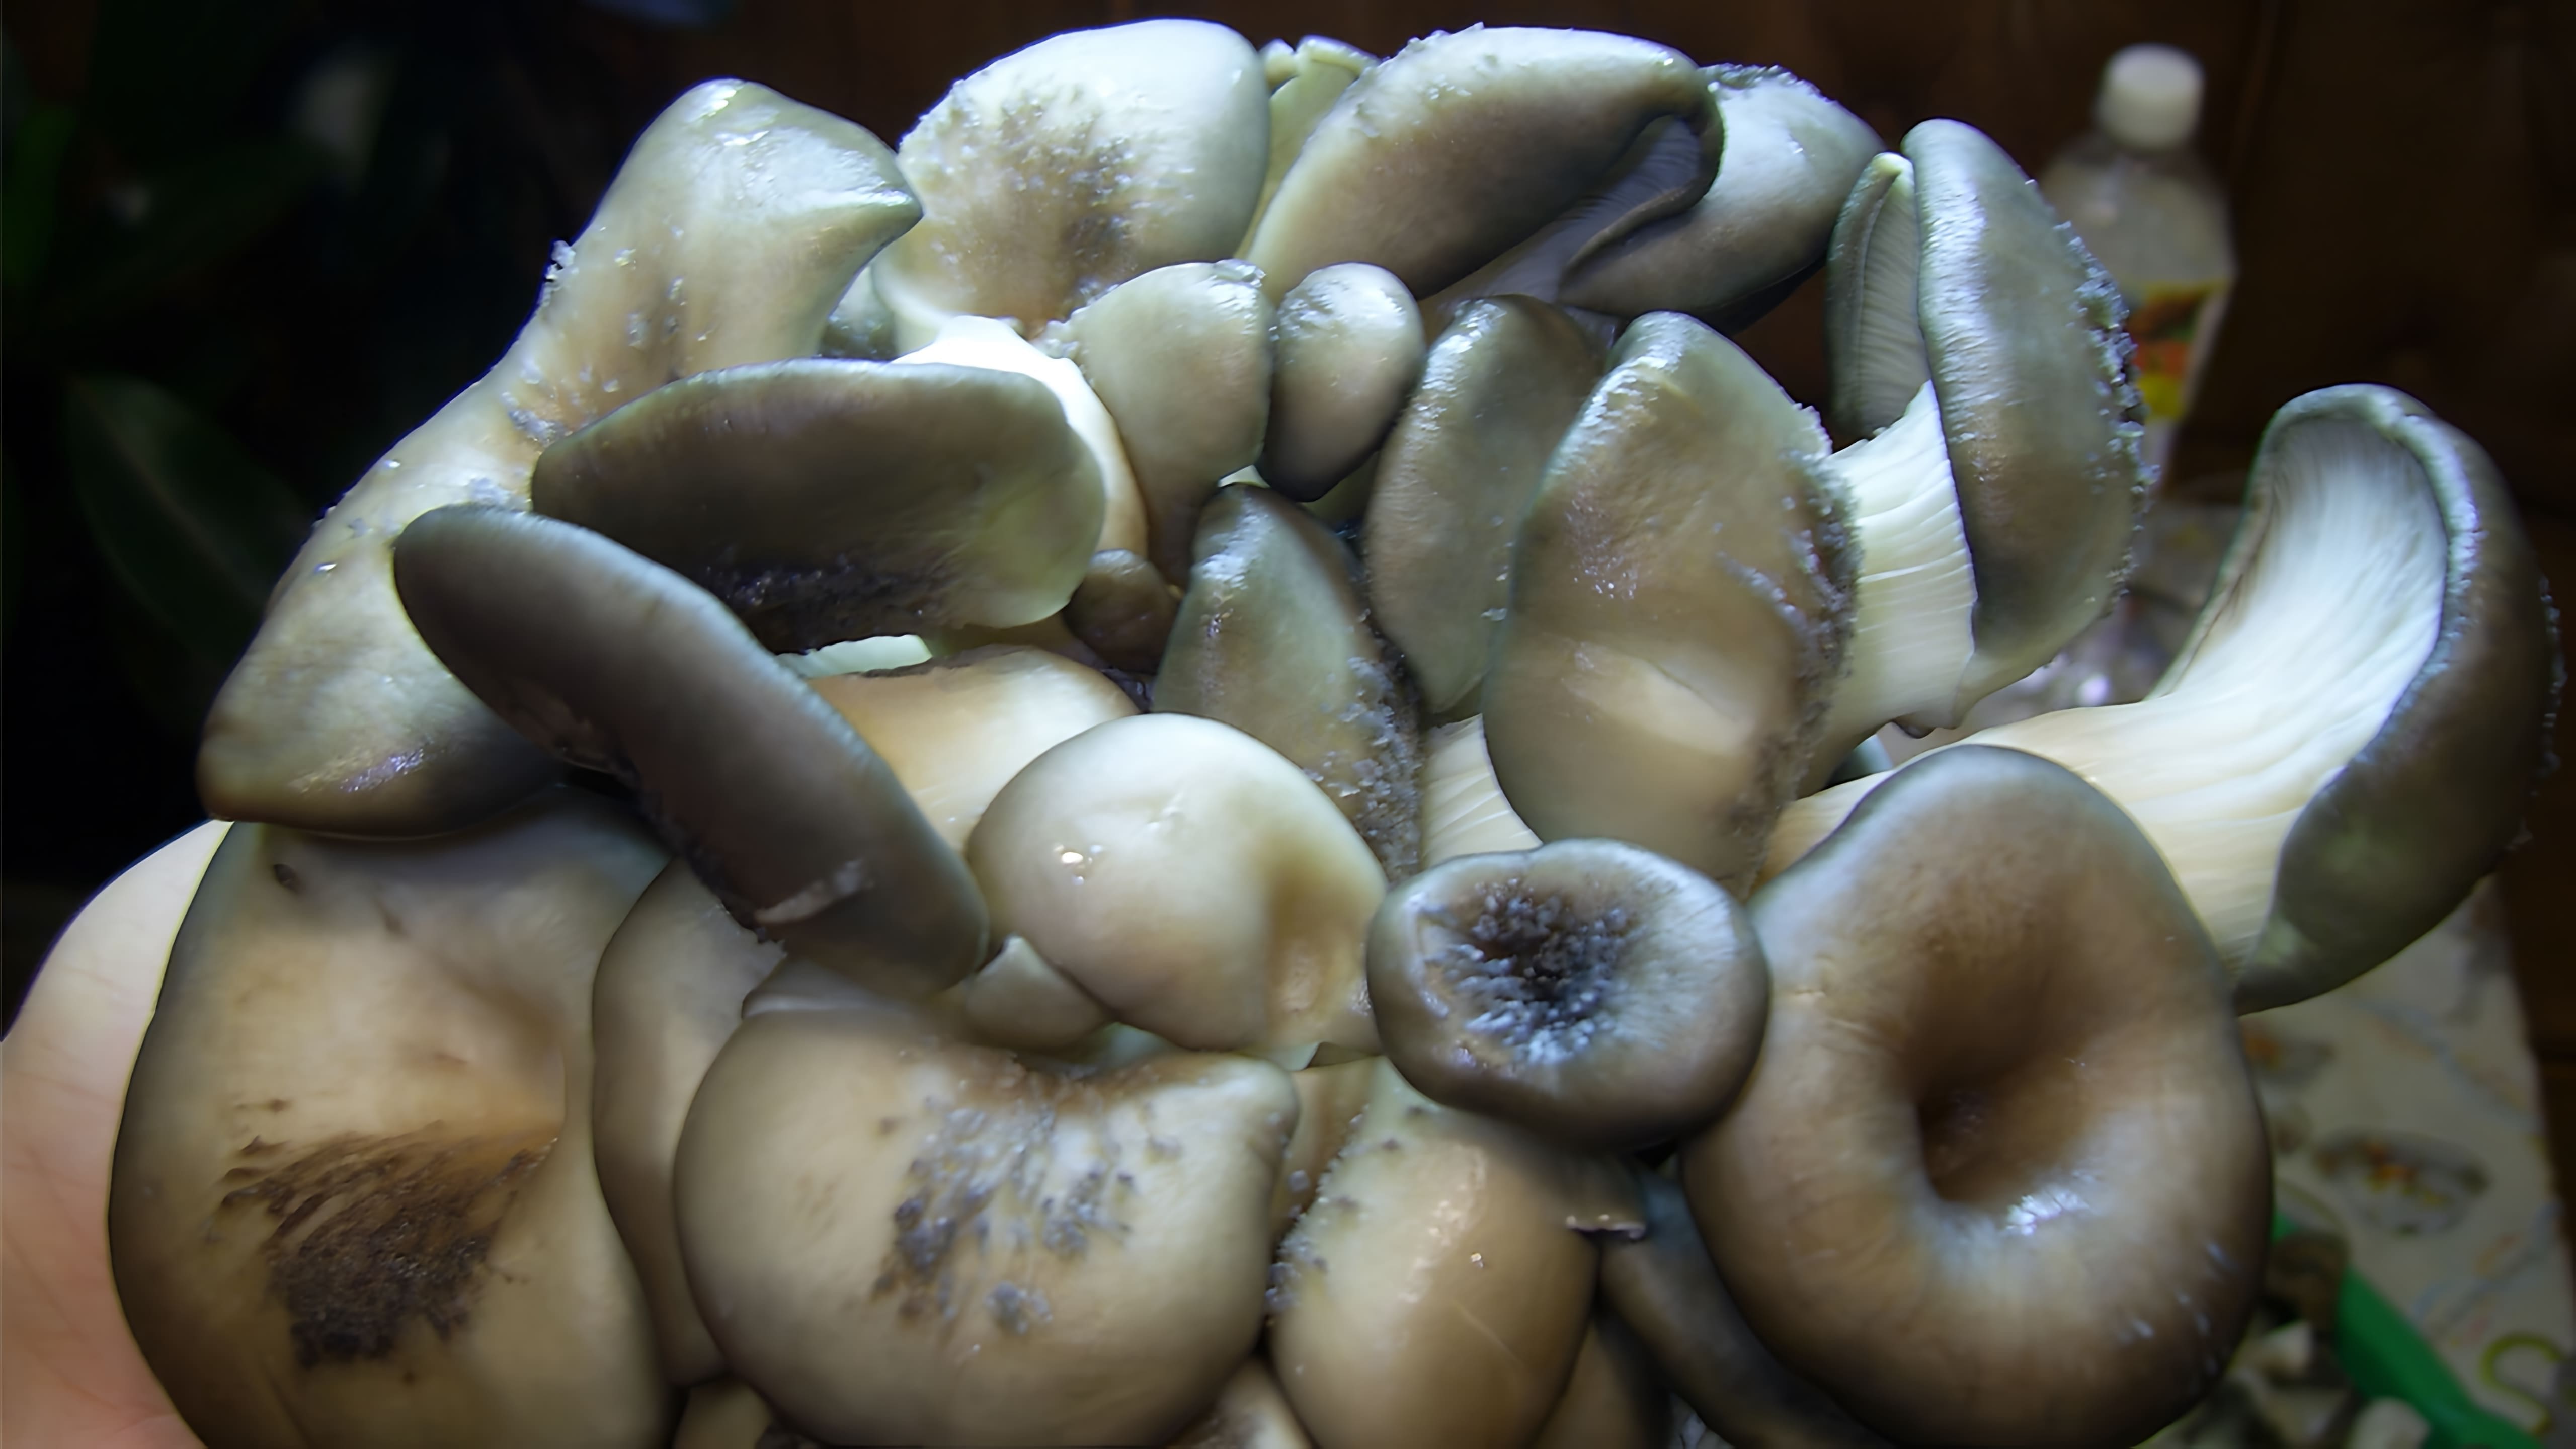 Маринованные грибы вешенки - это вкусное и полезное блюдо, которое можно приготовить в домашних условиях